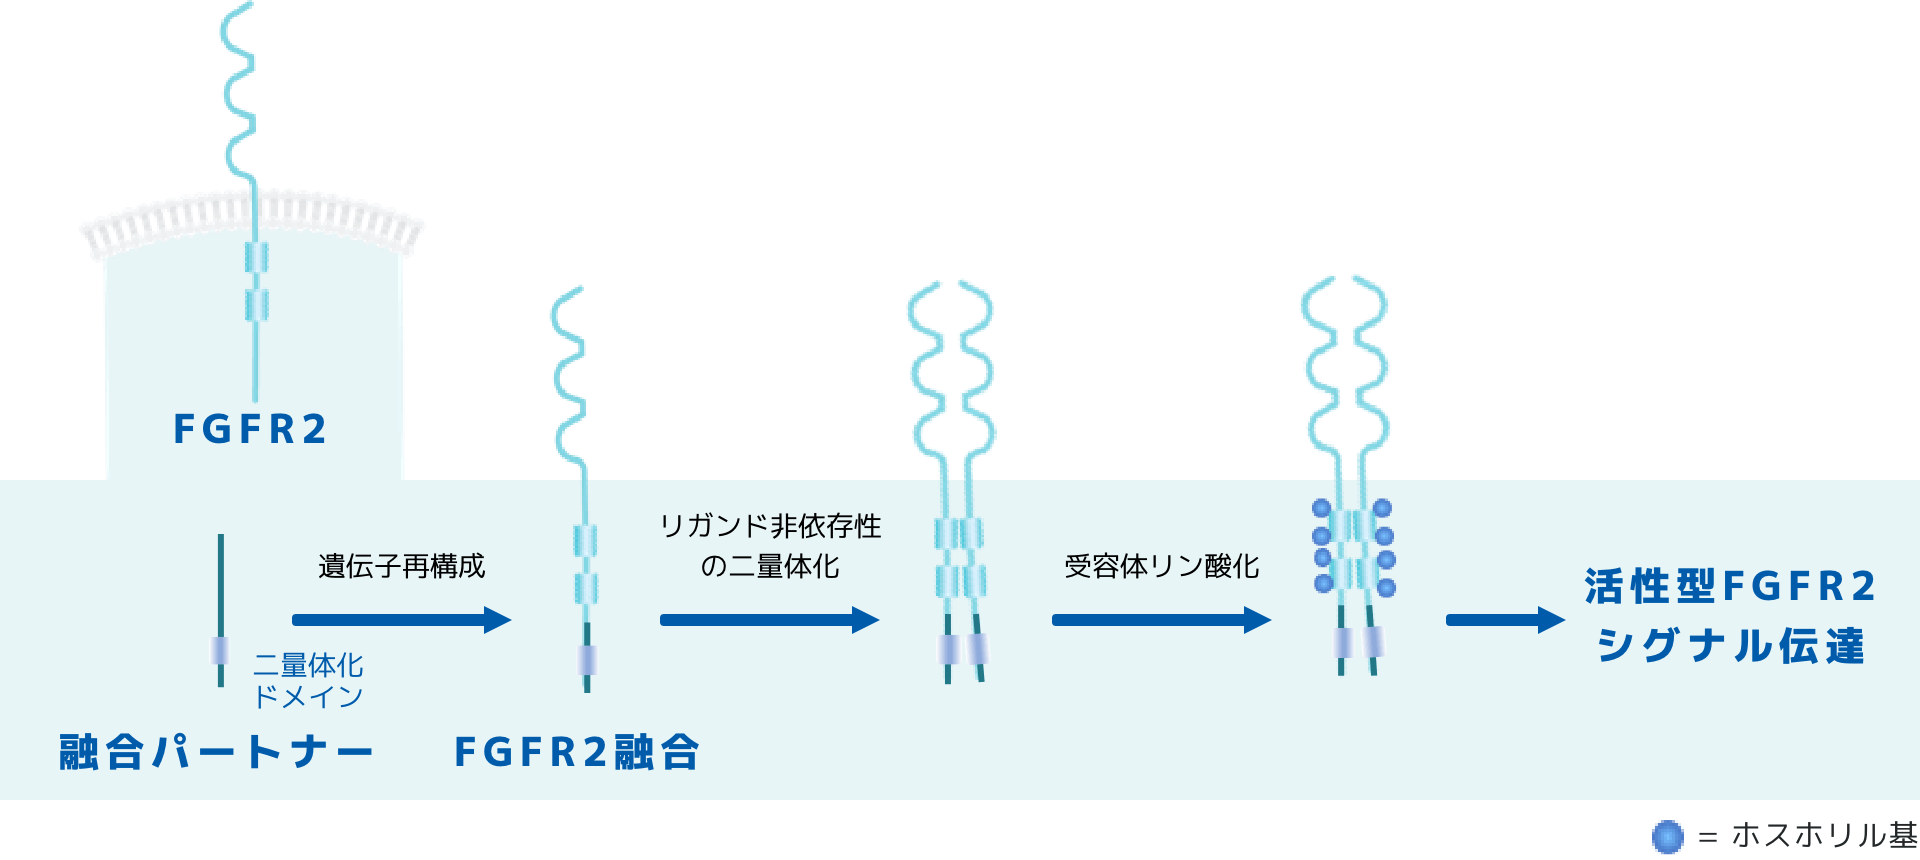 図:FGFR2融合遺伝子によるシグナル伝達経路の活性化